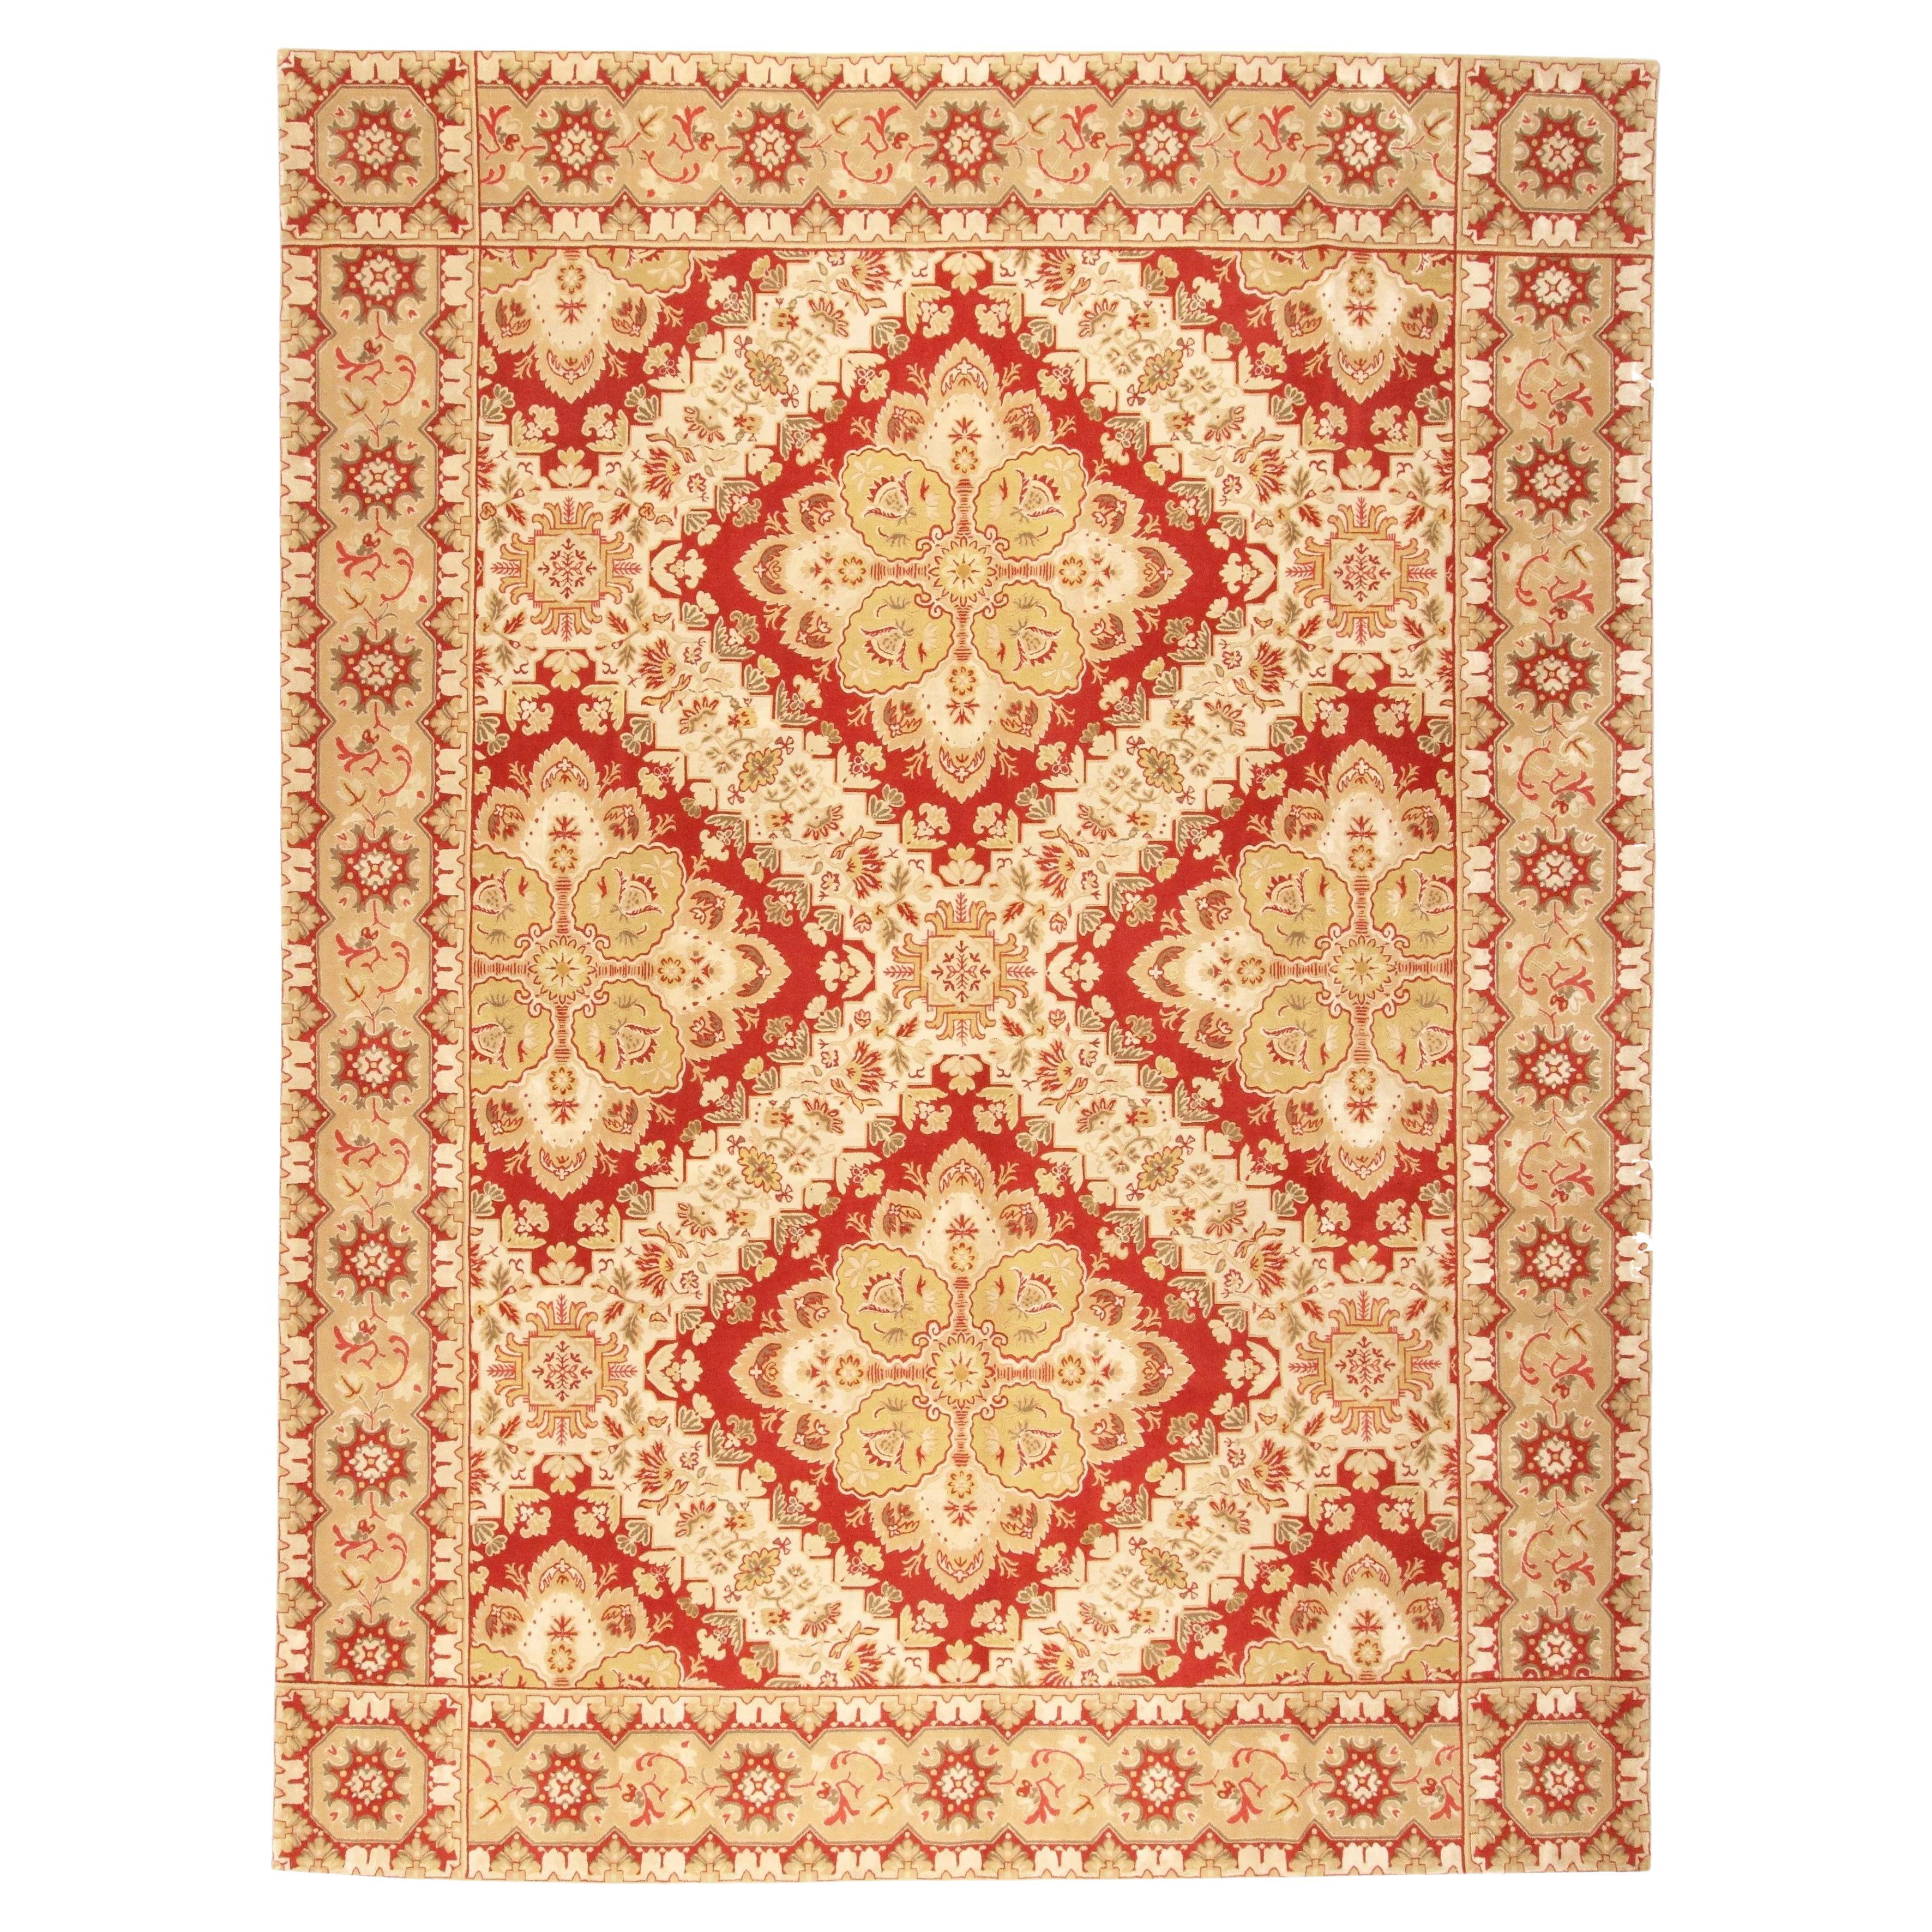 VIA COMO 'Venier' Wool & Silk Hand Knotted Rug 9x12 ft One of a Kind RARE Carpet